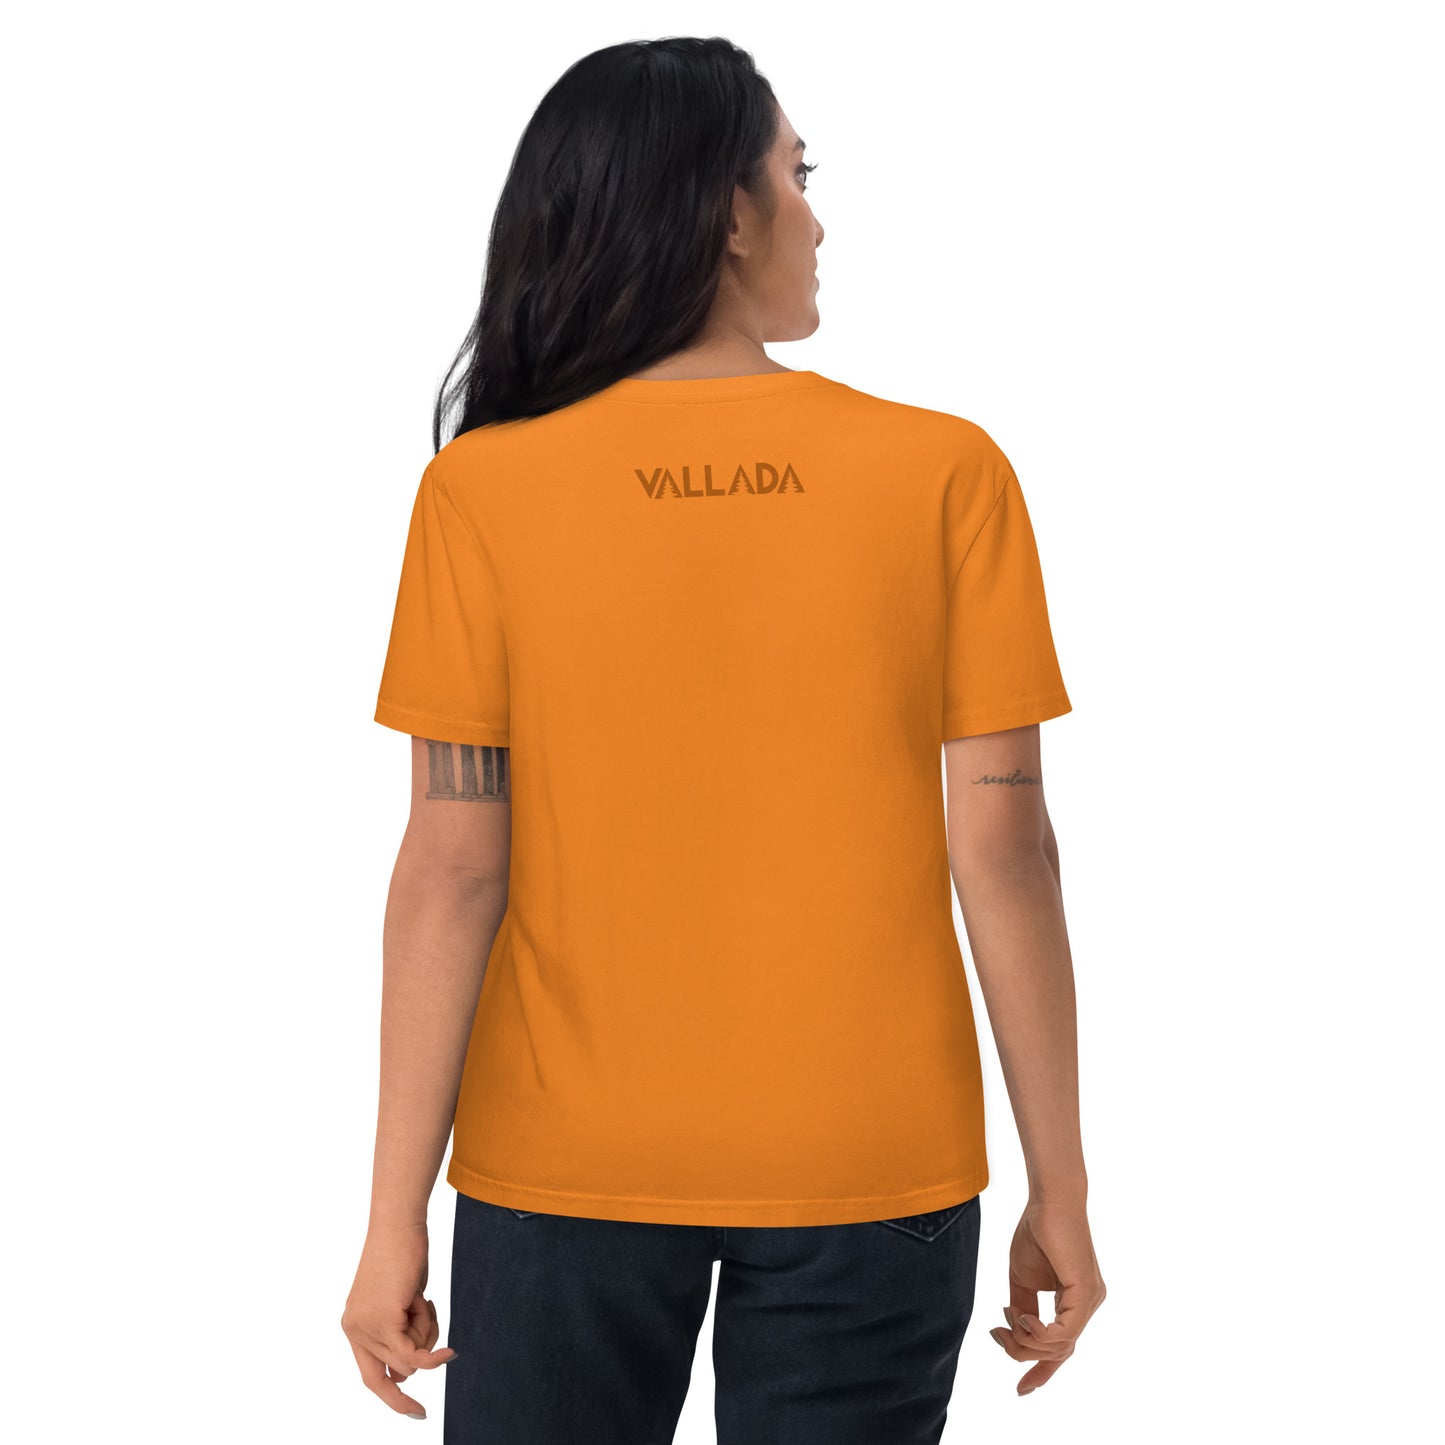 Diese Wanderfreundin trägt ein oranges Damen T-Shirt aus der Säntis-Collection von Vallada. Sie steht mit dem Rücken zur Kamera, so dass wir das Vallada-Logo sehen.